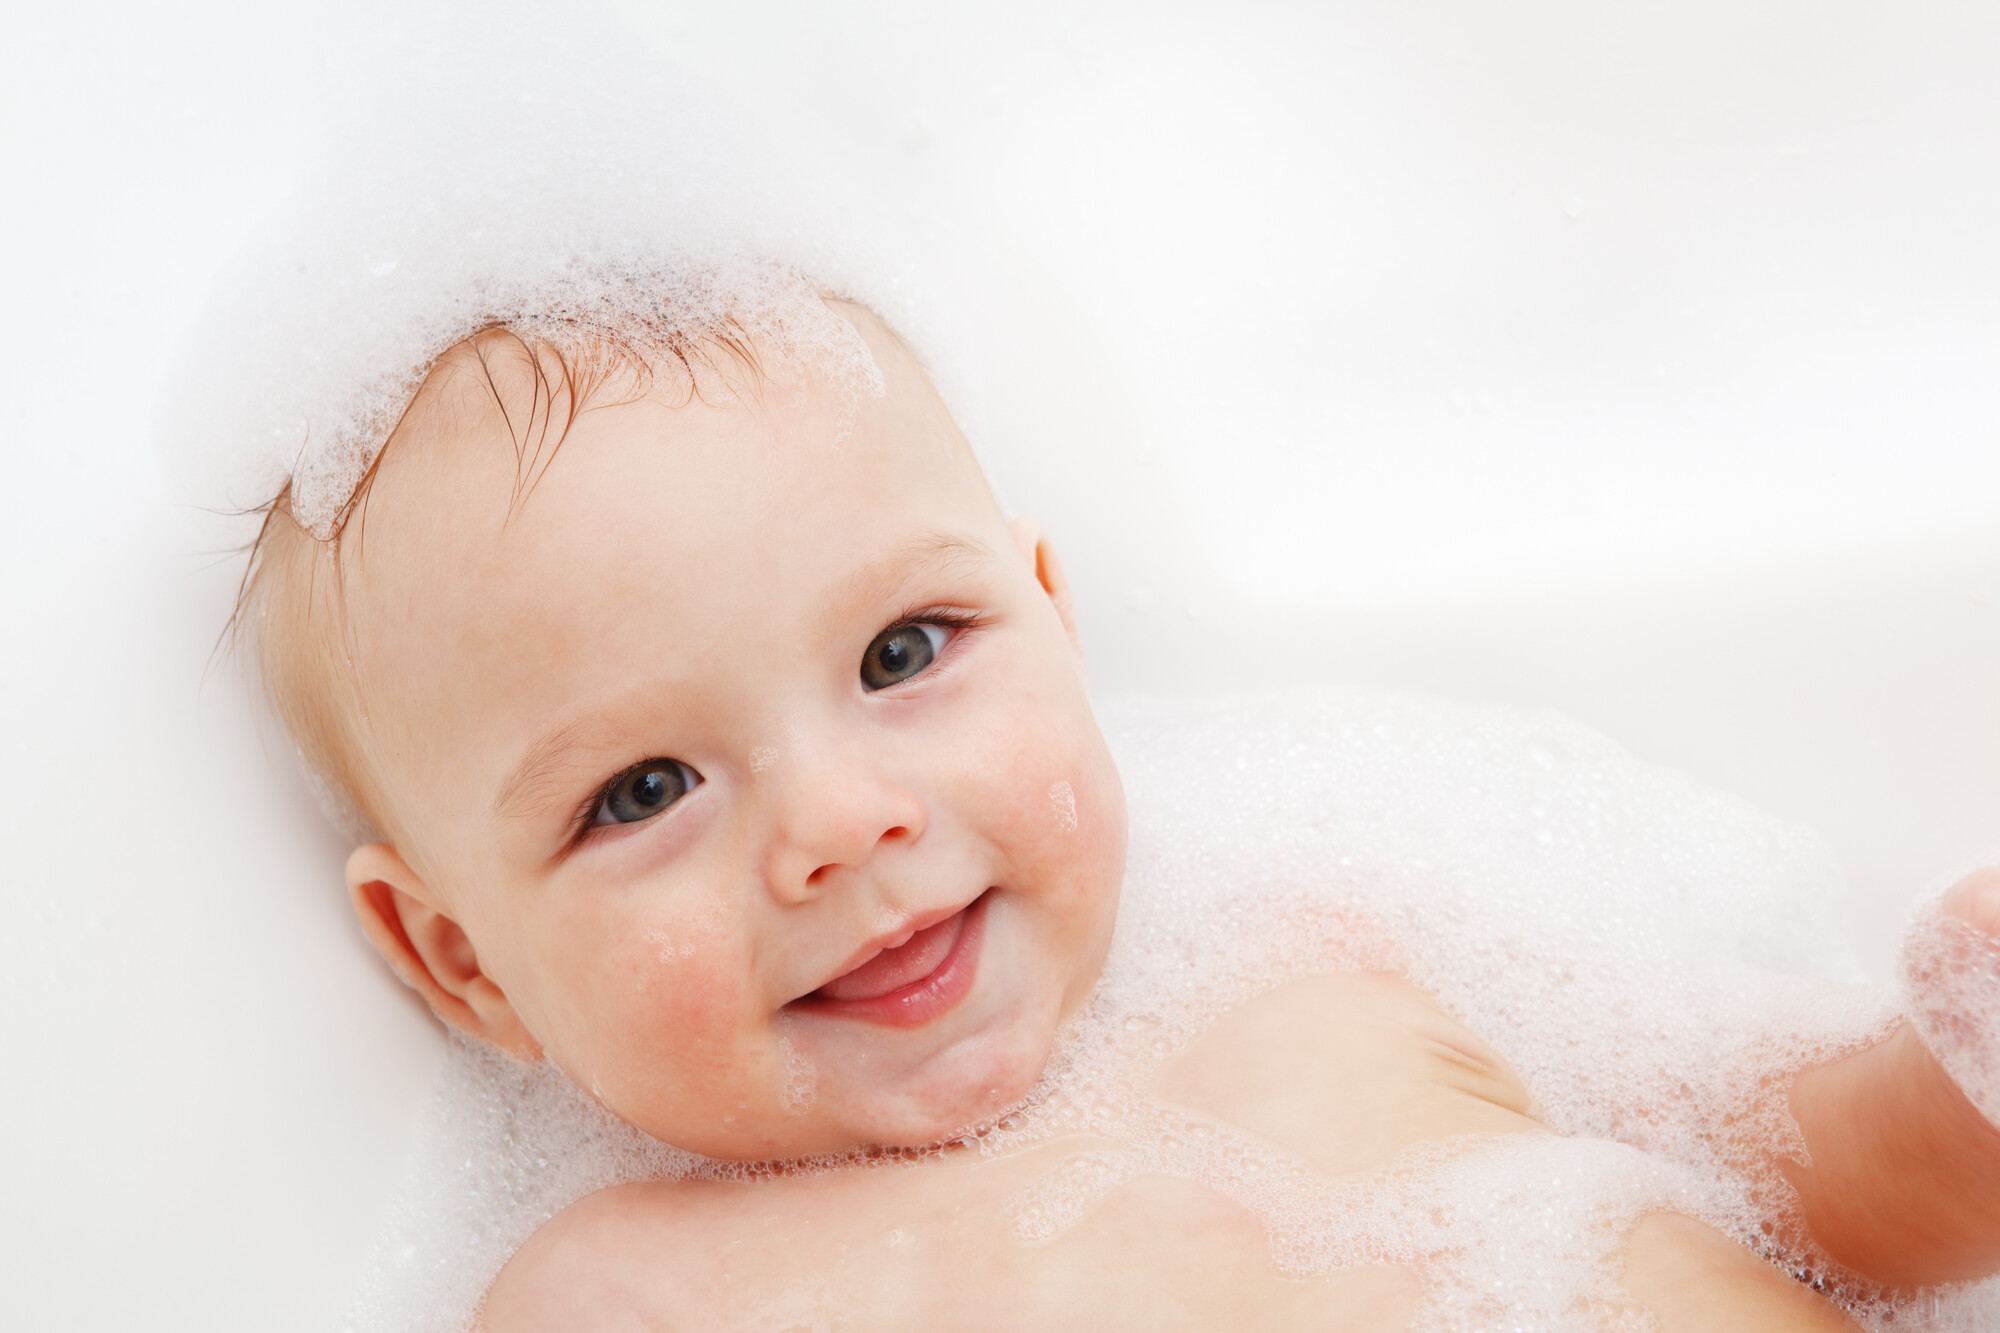 Laver les cheveux de bébé: comment faire?